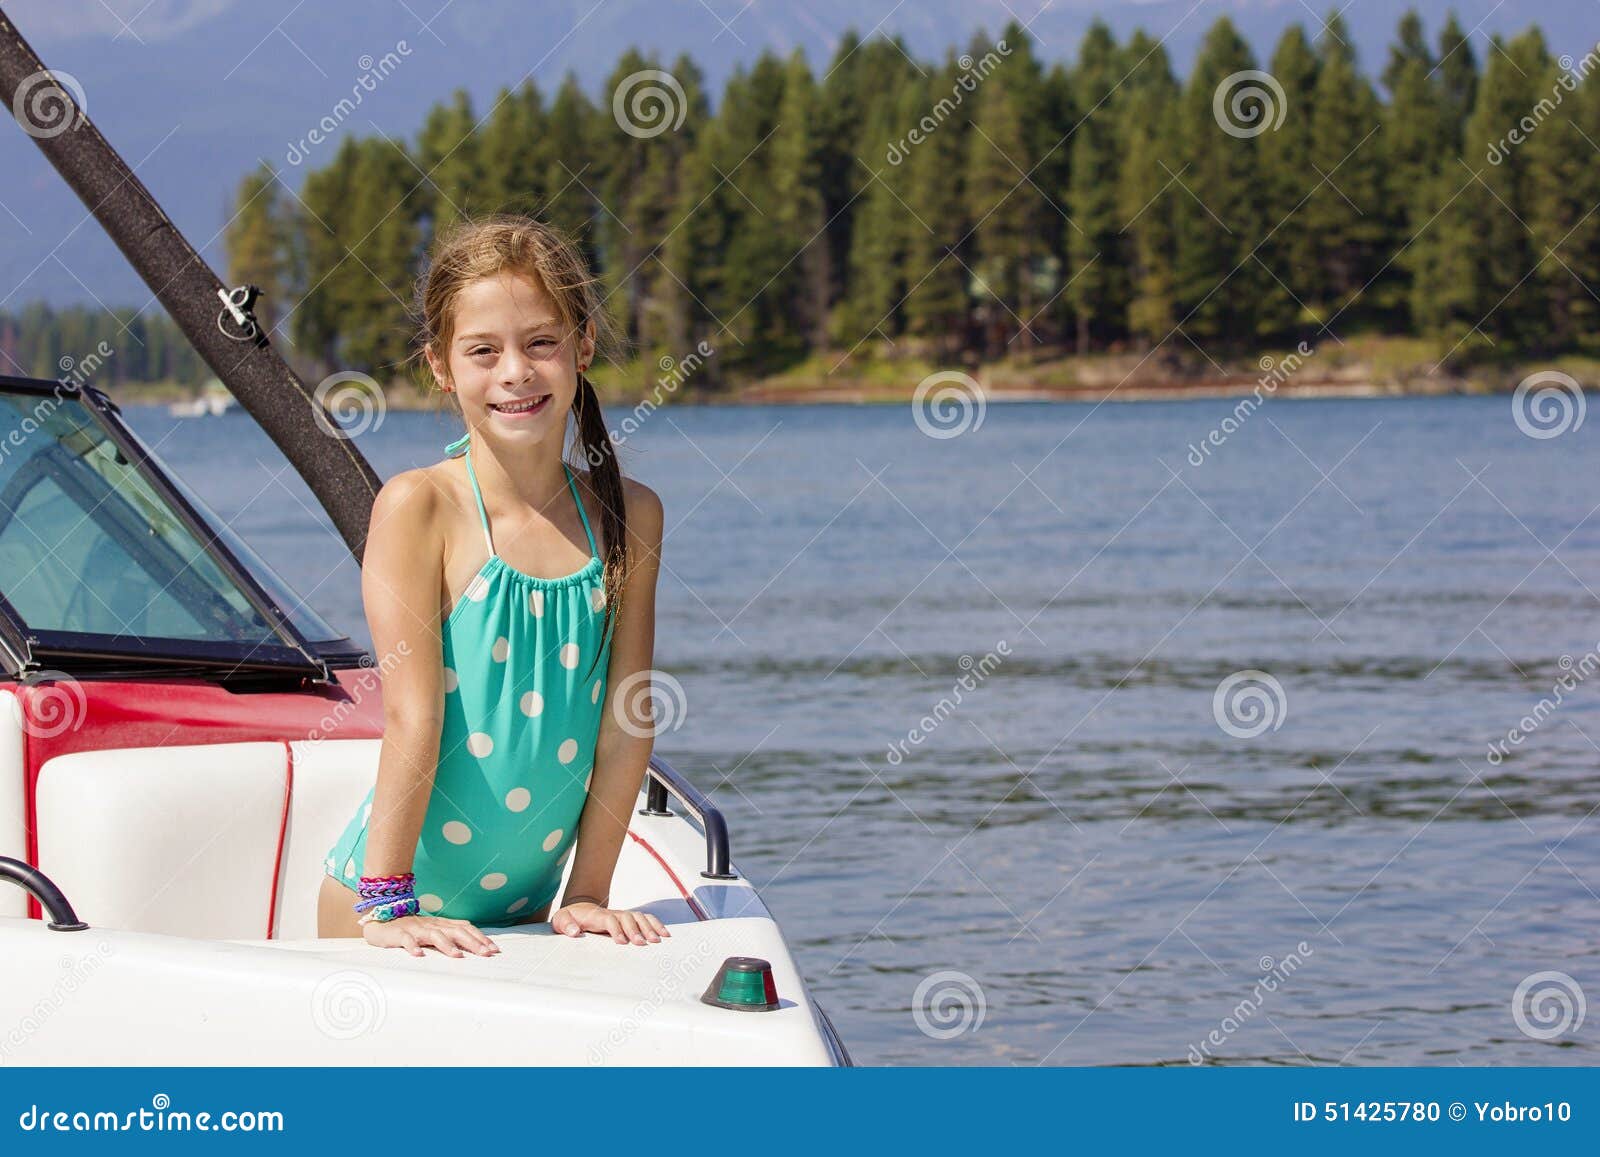 girl motorboat girl